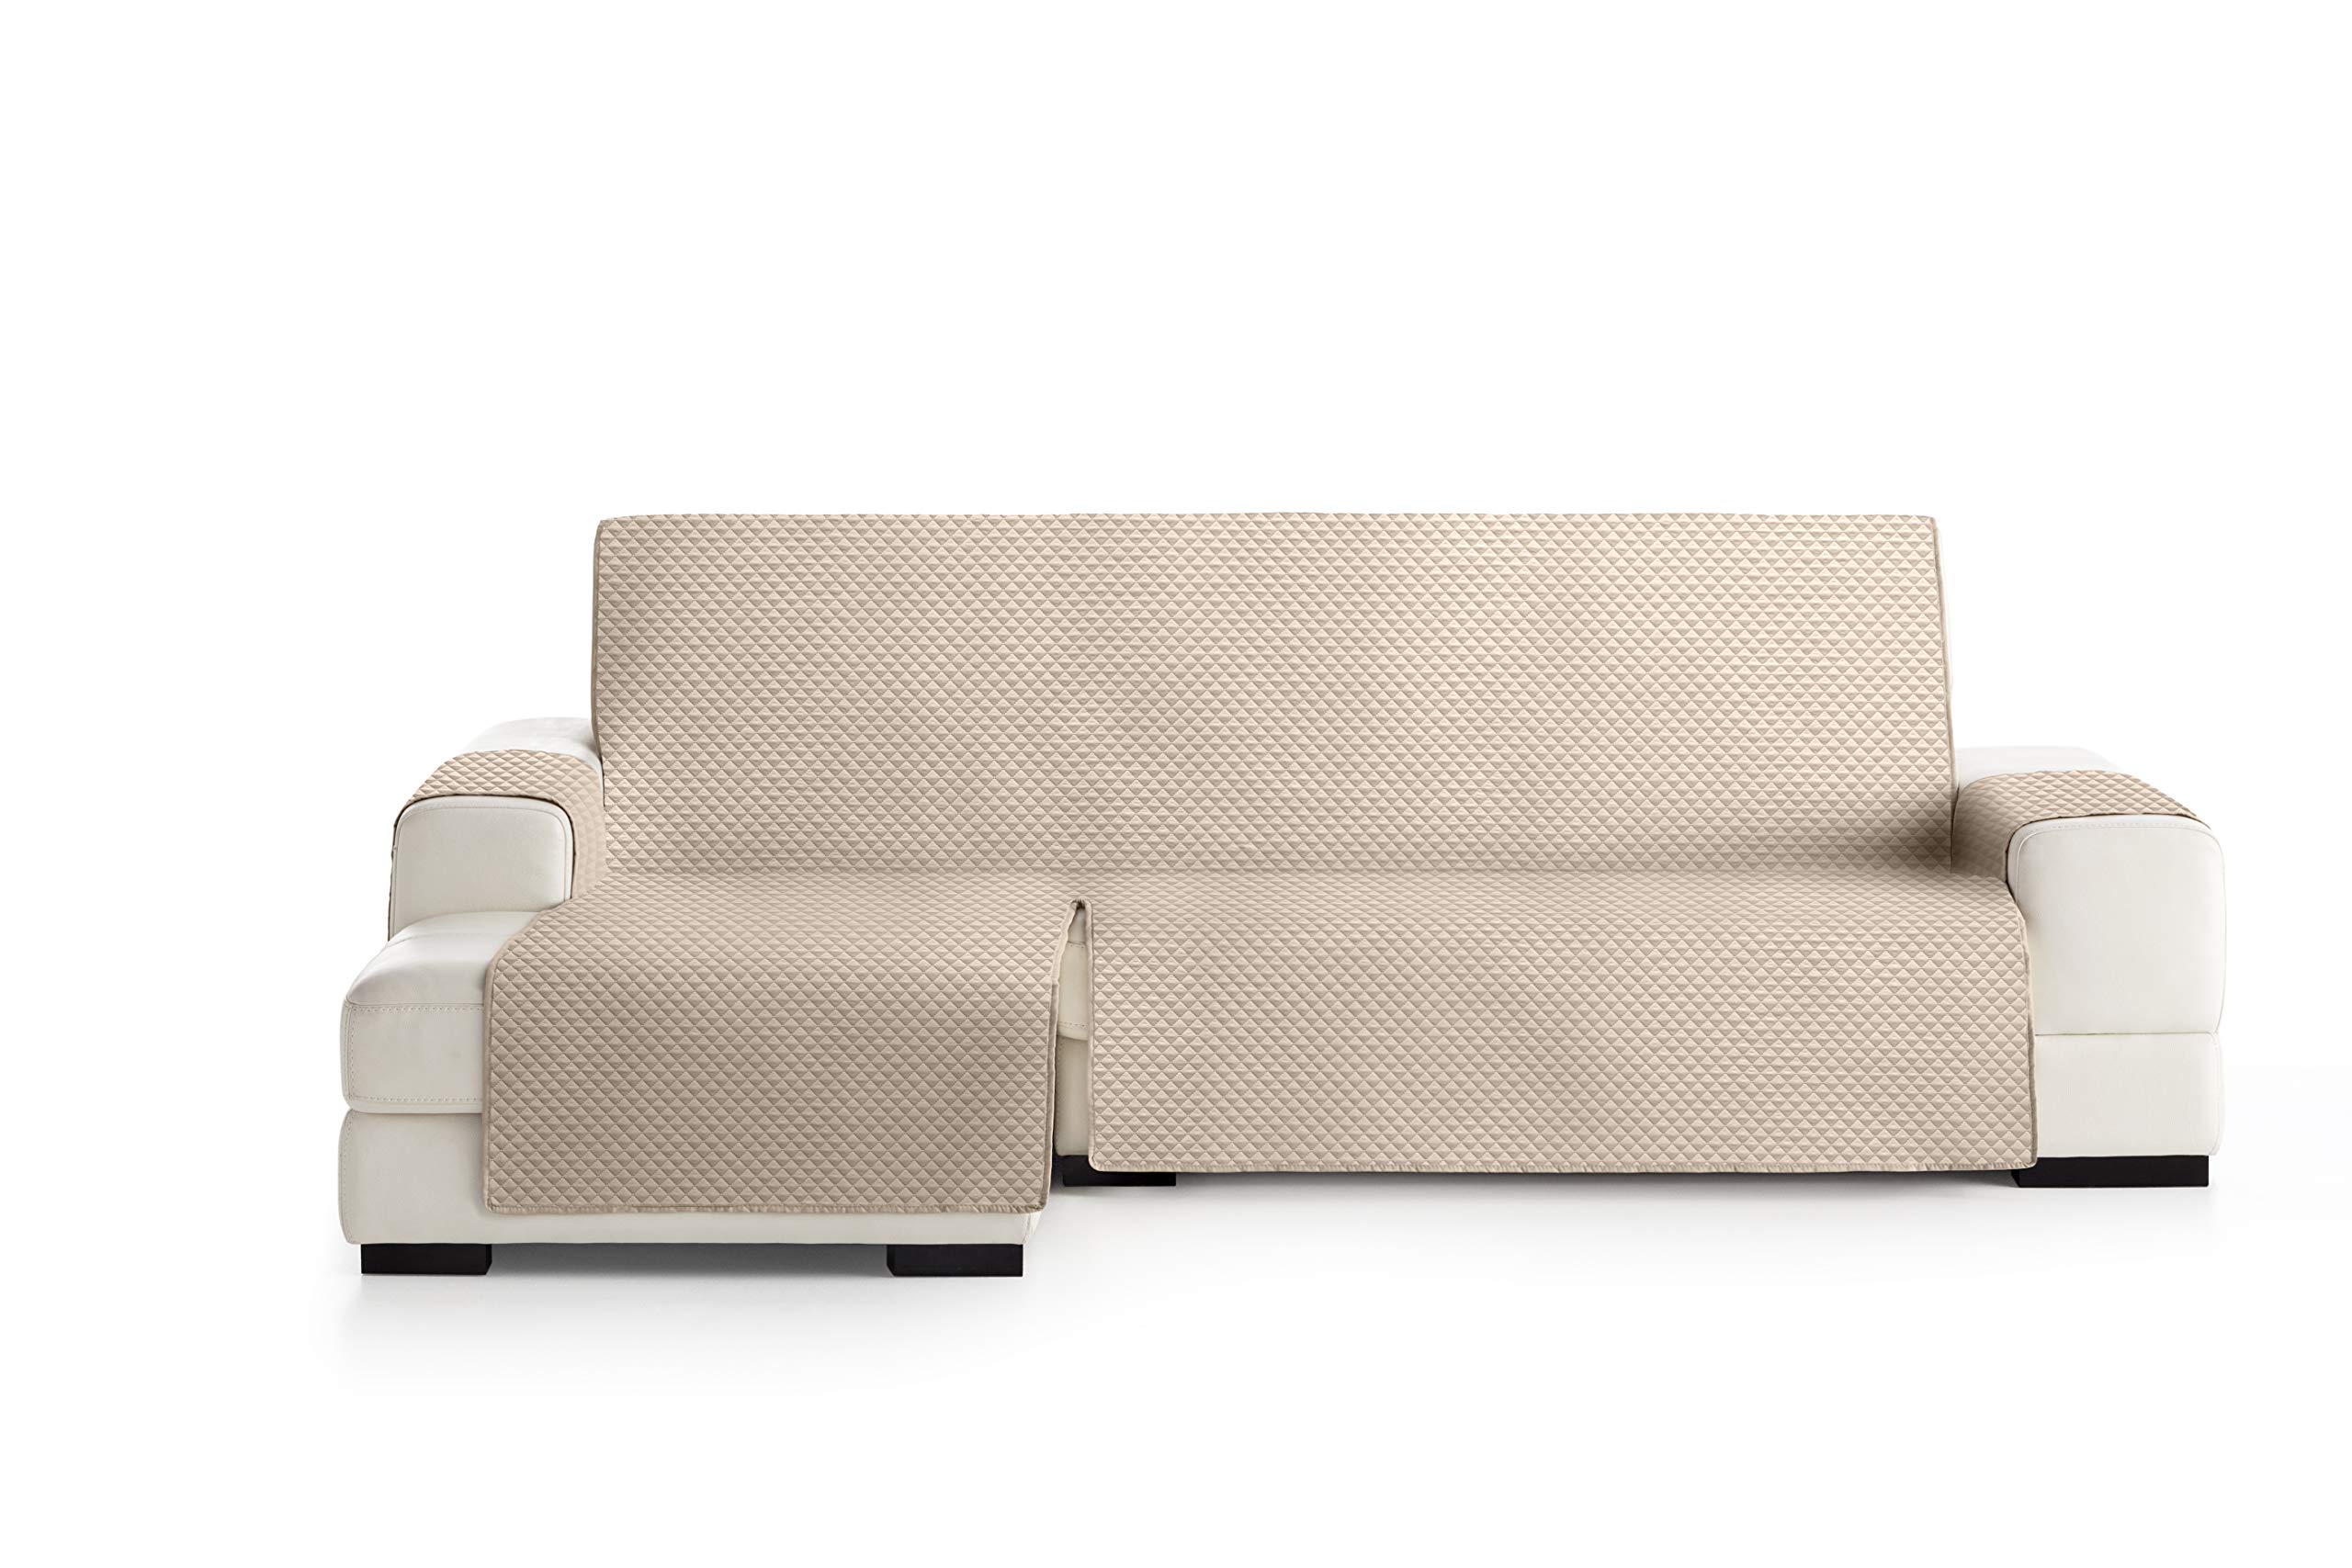 Eysa Oslo Protect wasserdichte und atmungsaktive Sofa überwurf, 100% Polyester, beige, 240 cm